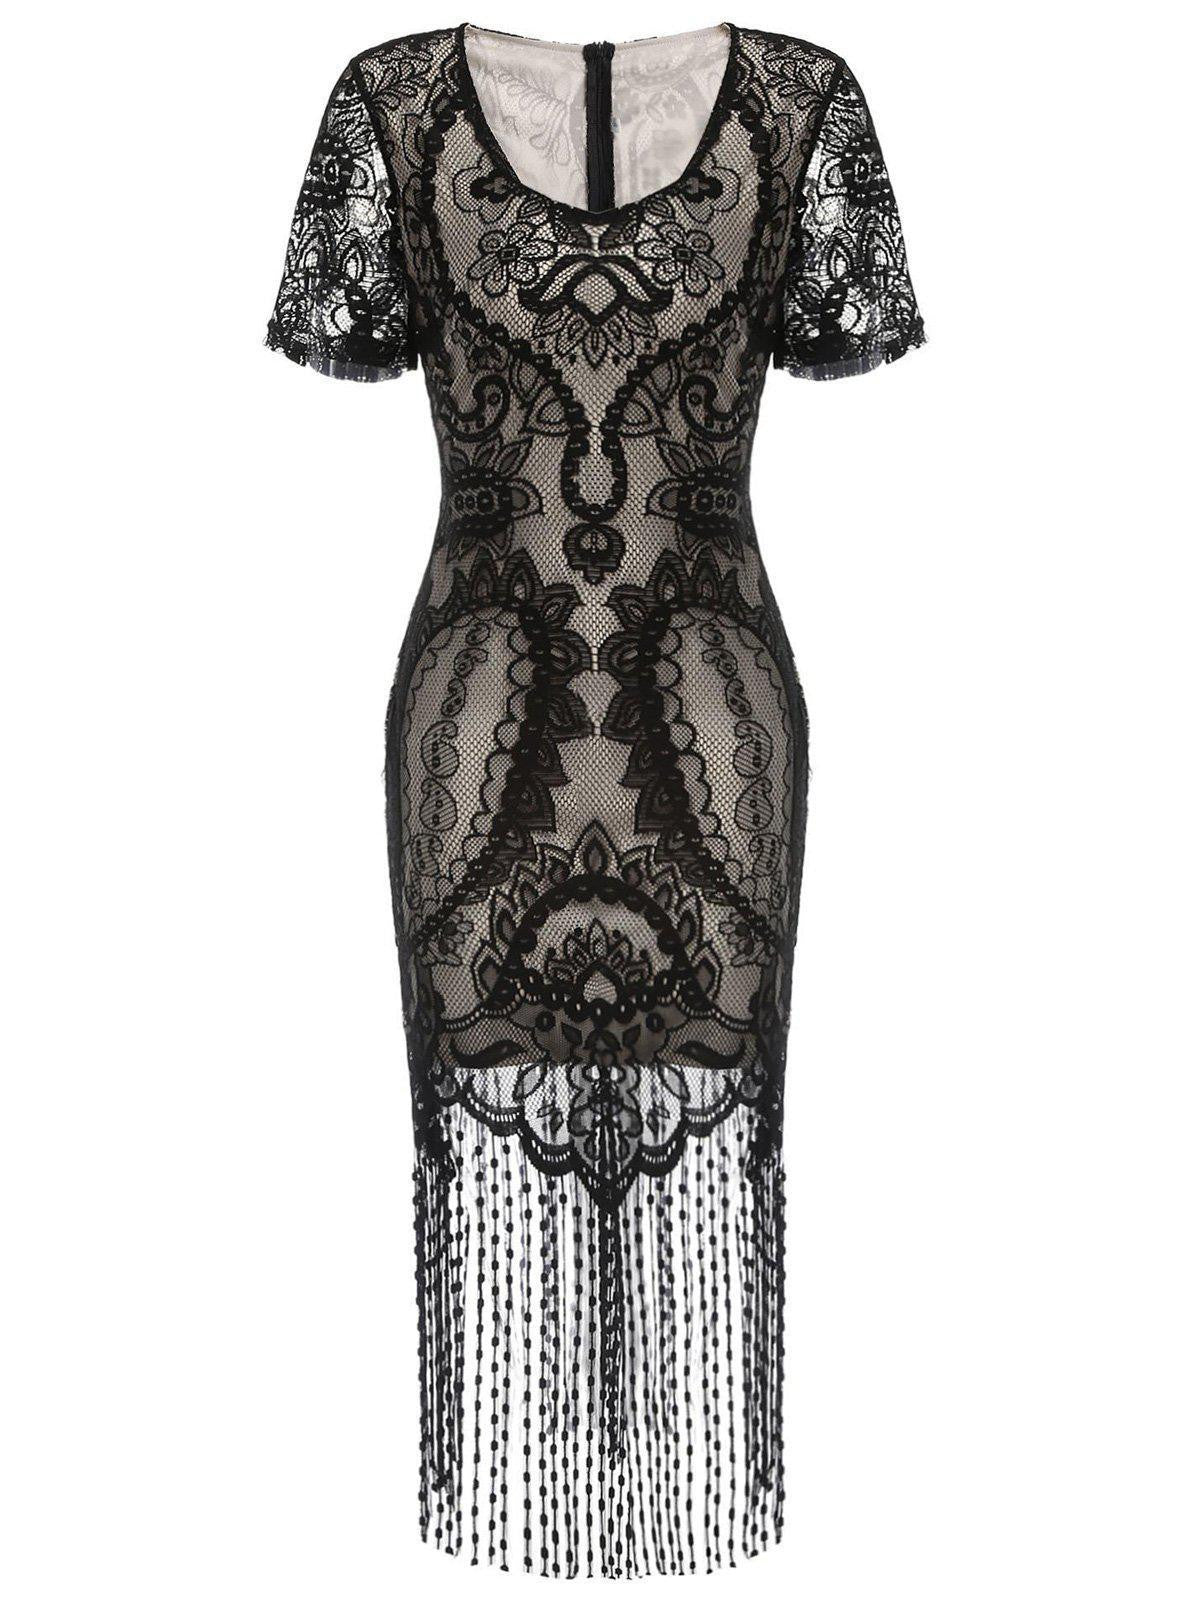 US Warehouse] Belted Black 1920s Fringe Gatsby Dress